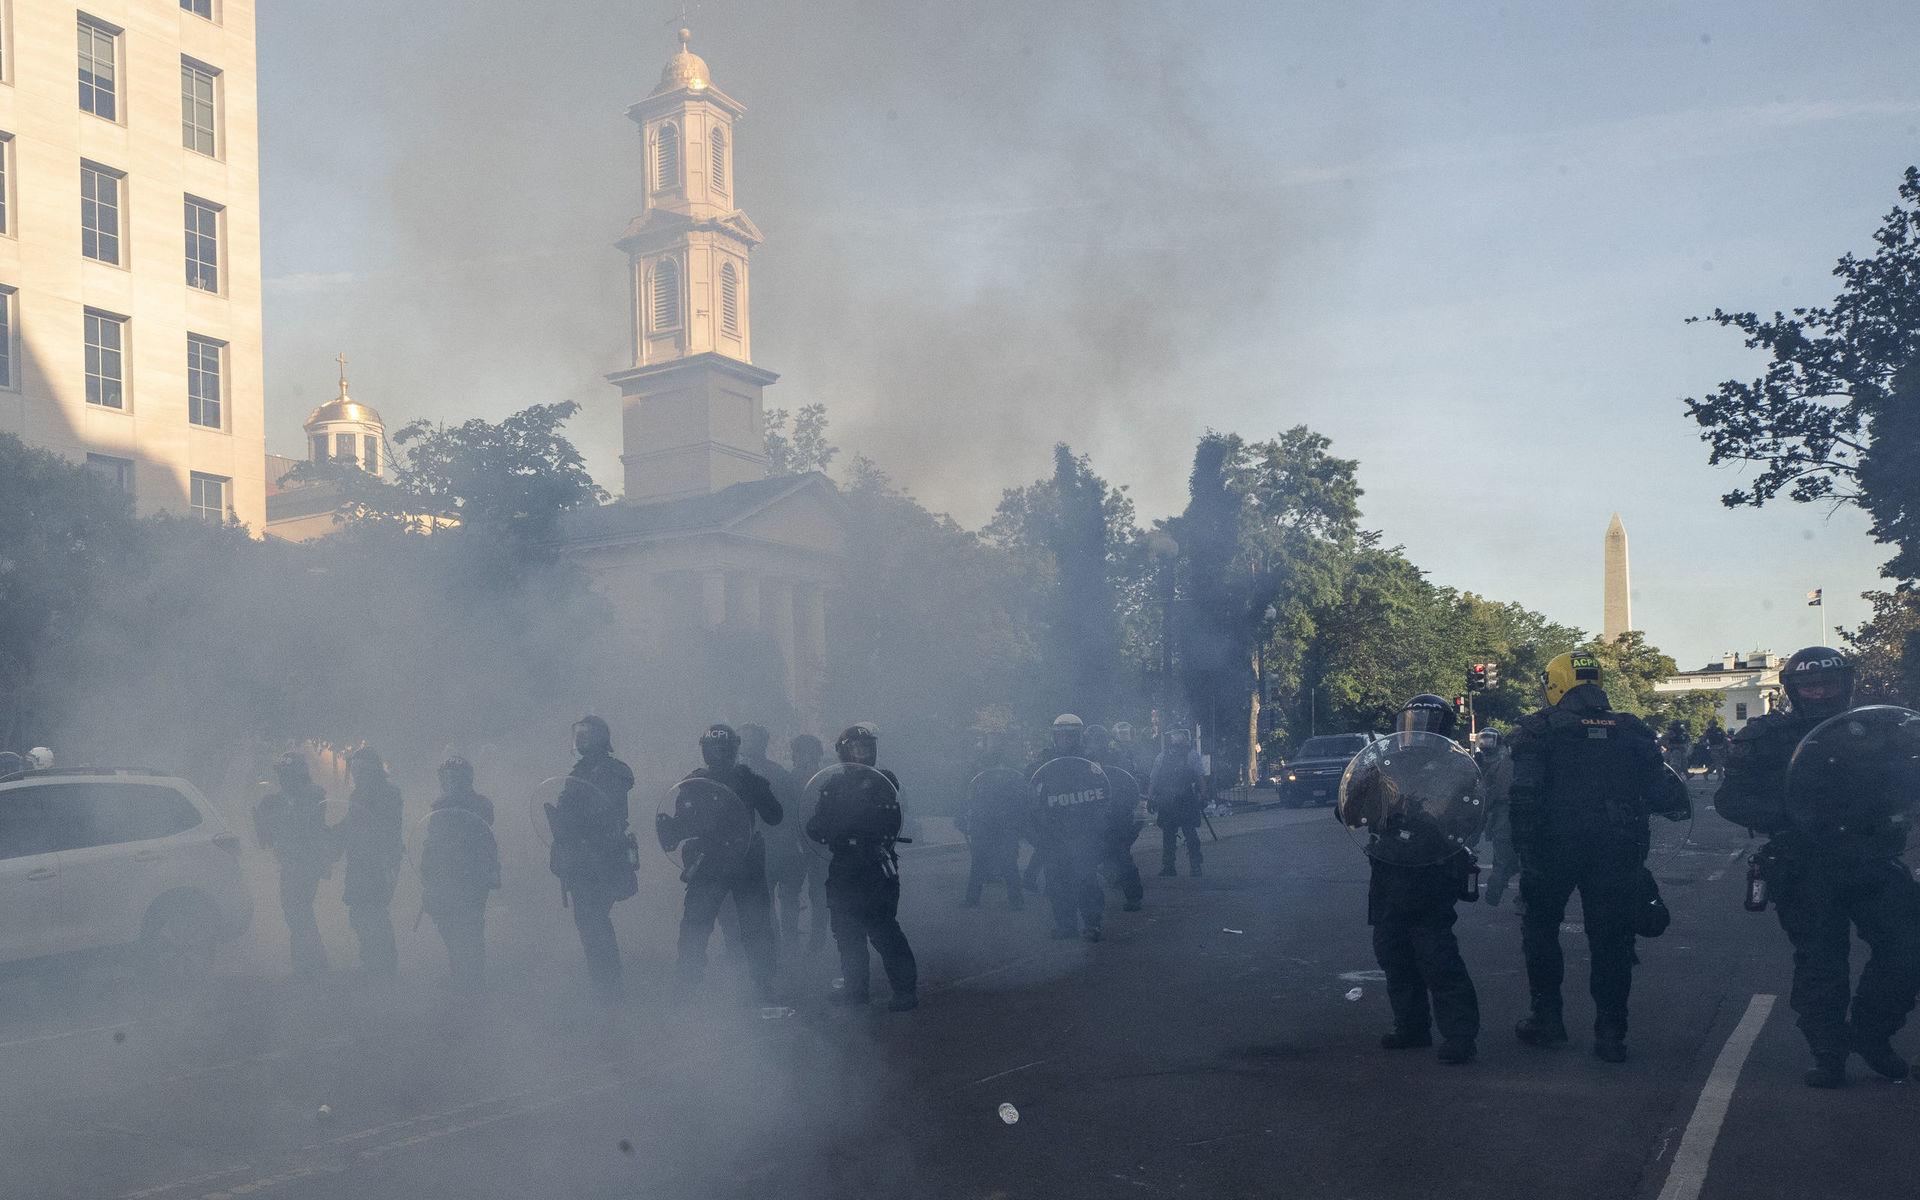 Tårgas fyller luften när kravallpolis skingrar demonstranter vid St John&apos;s kyrka som ligger på andra sidan Lafayette Park sett från Vita huset.